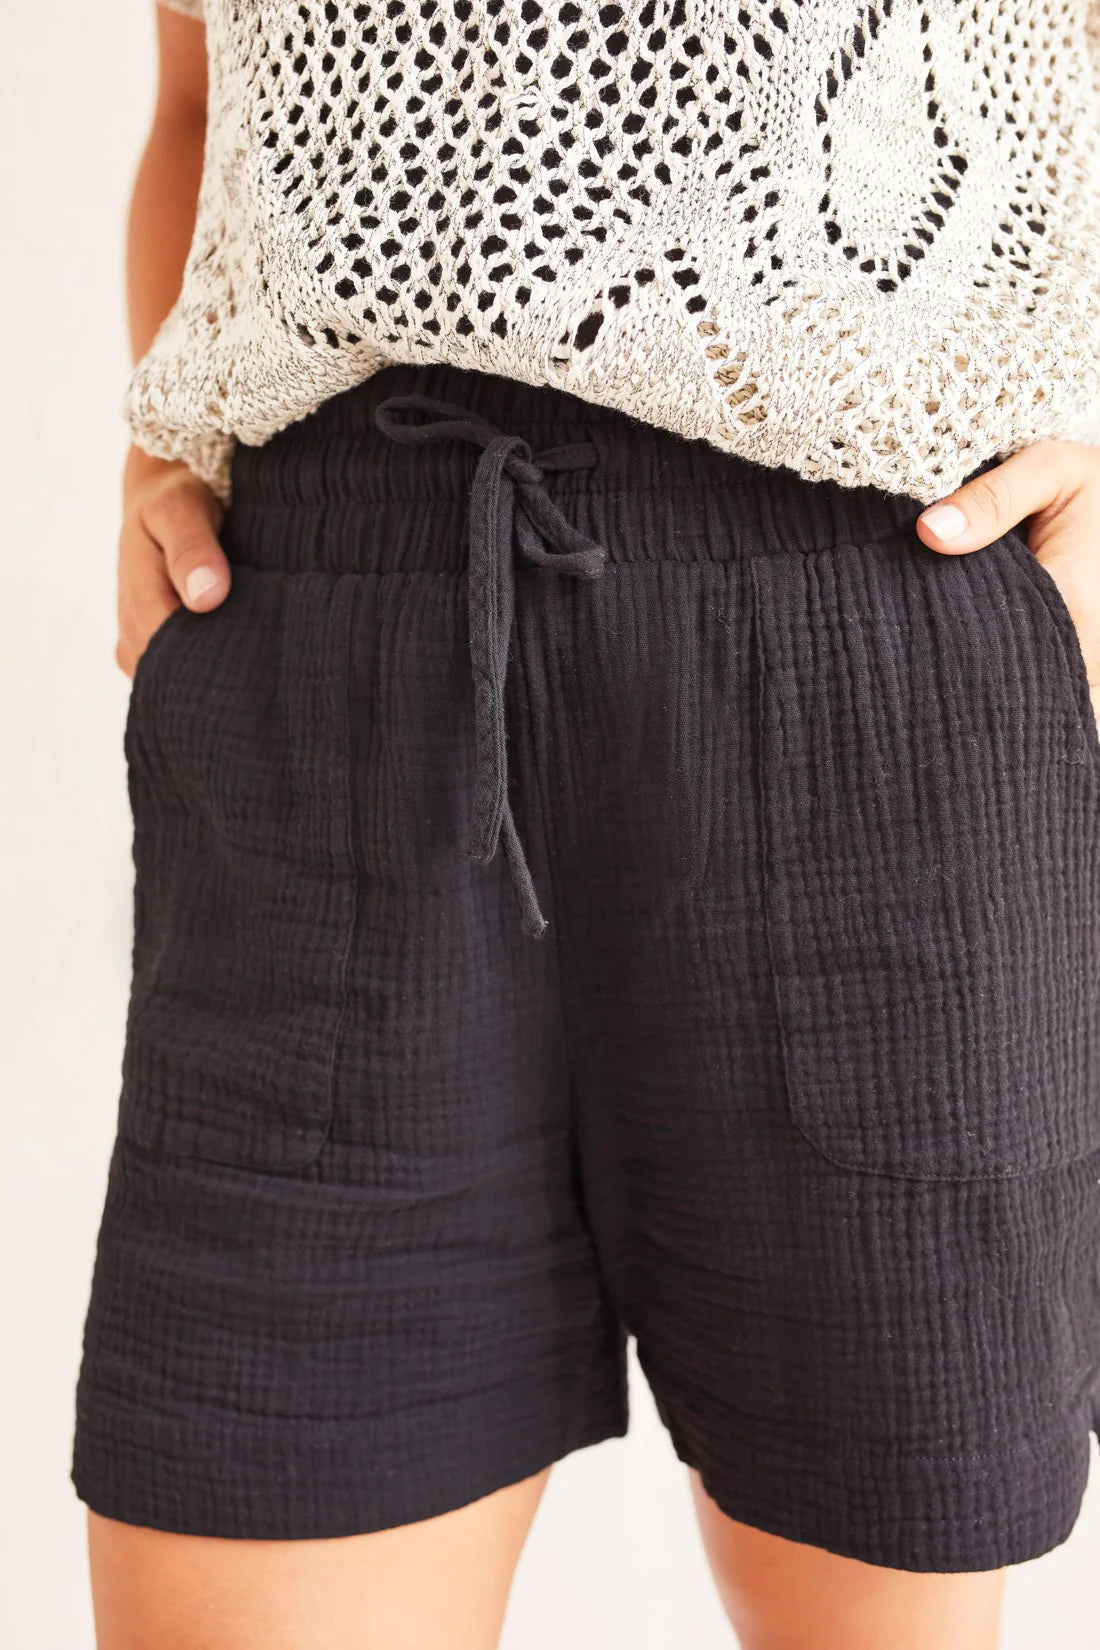 Black Cotton Gauze Shorts With Elastic Waist